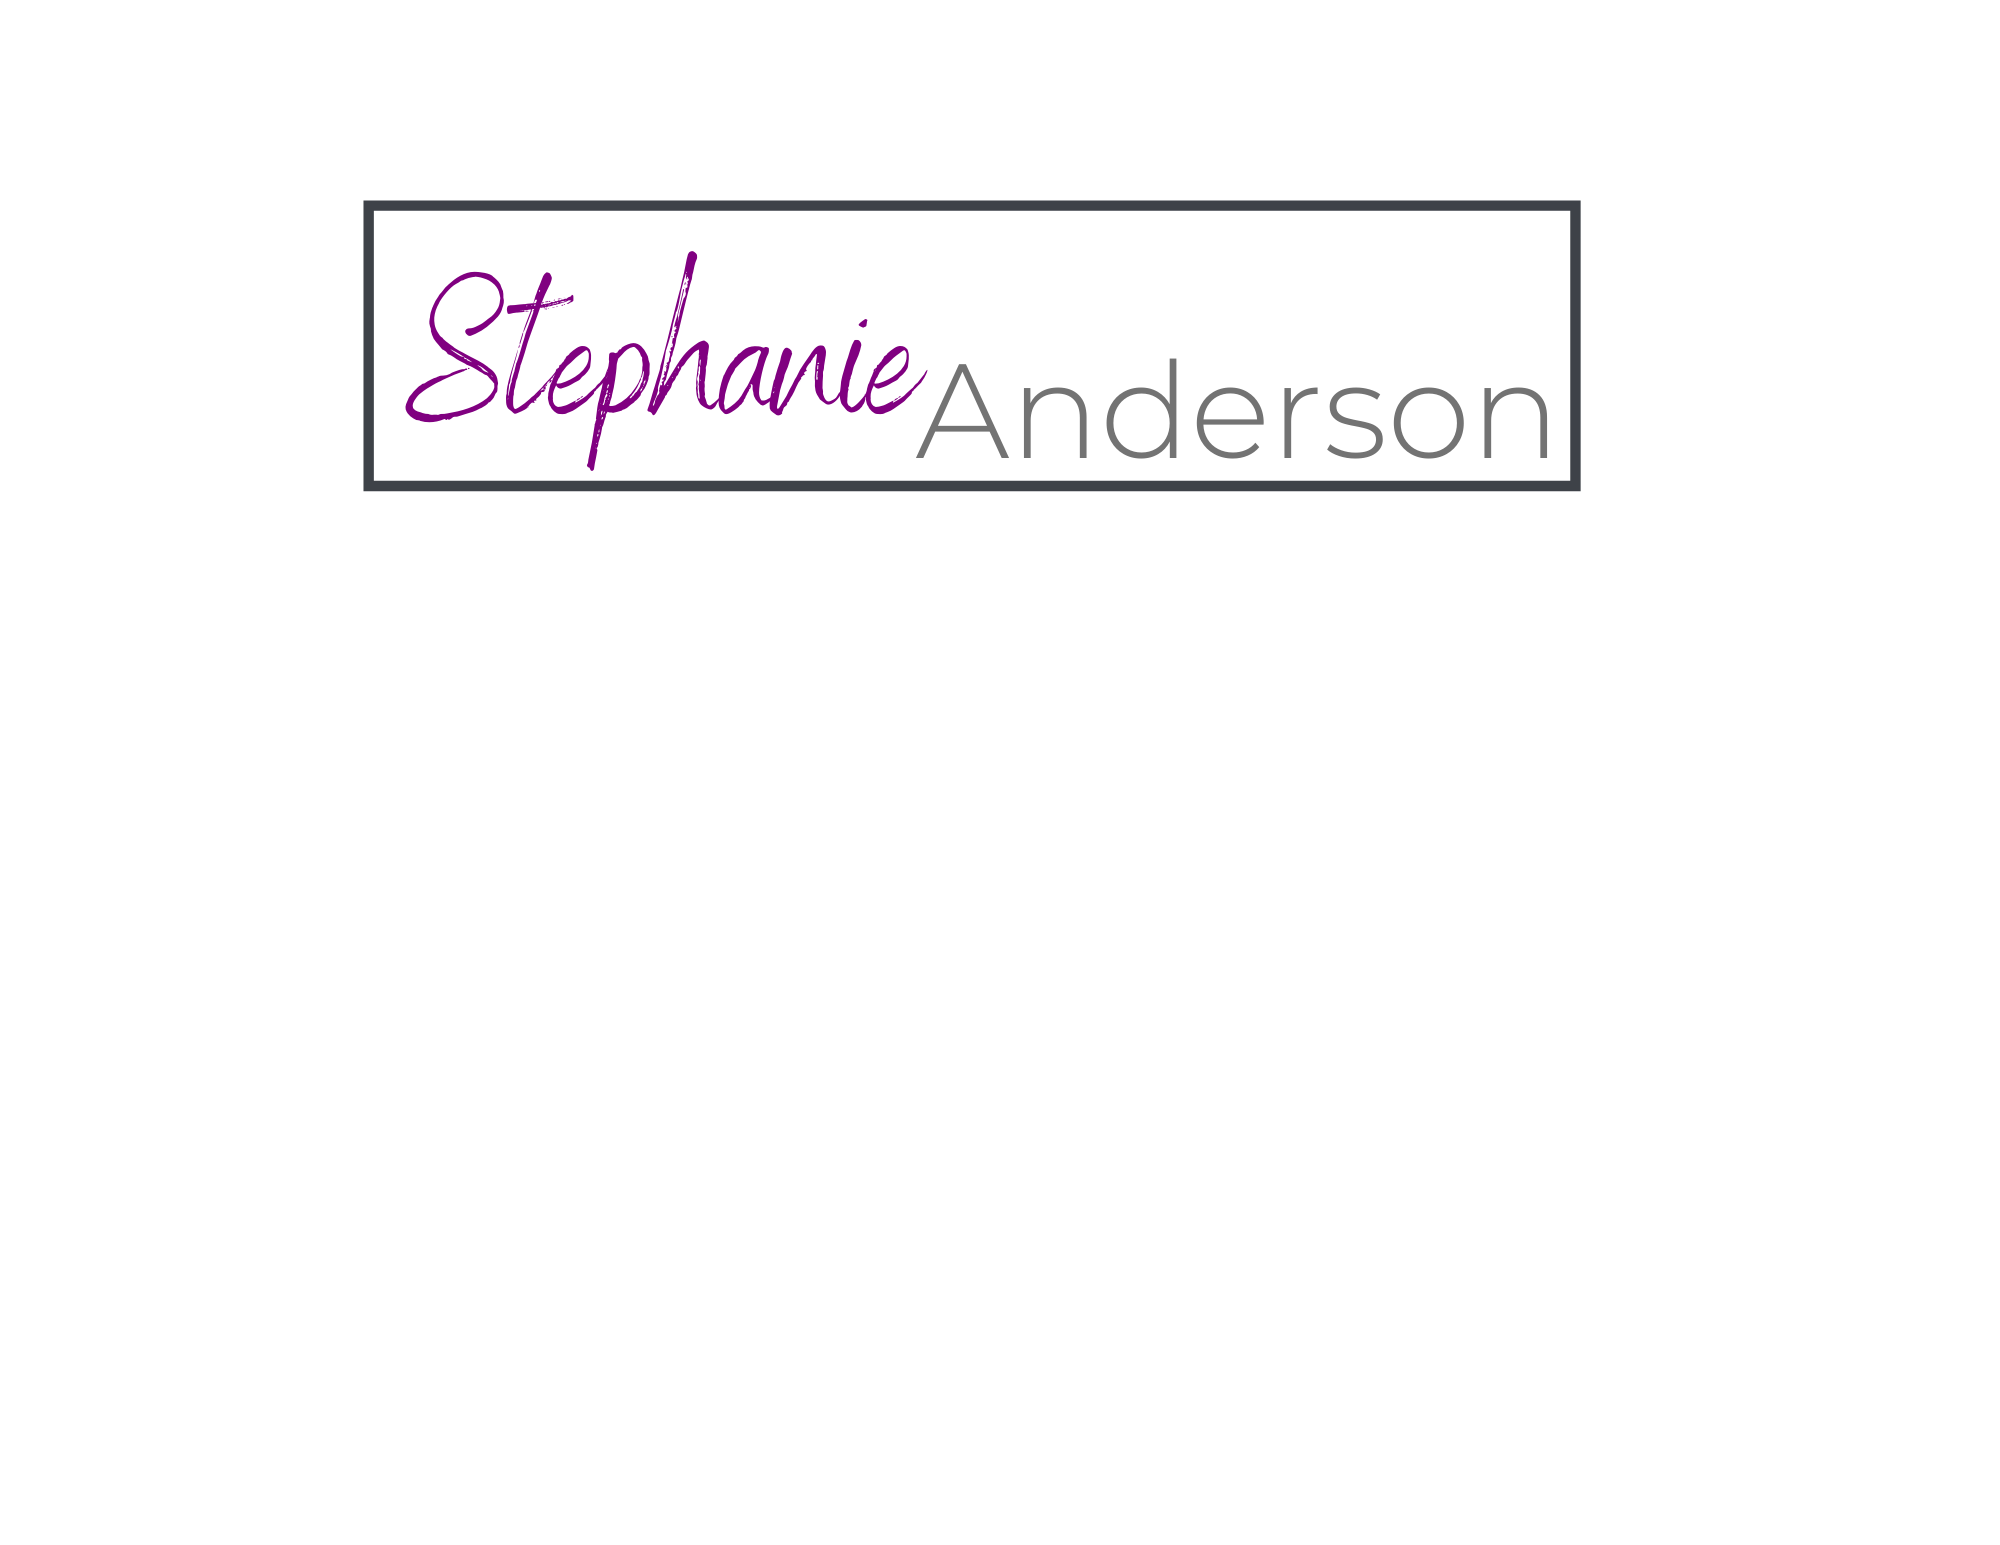  Stephanie Anderson